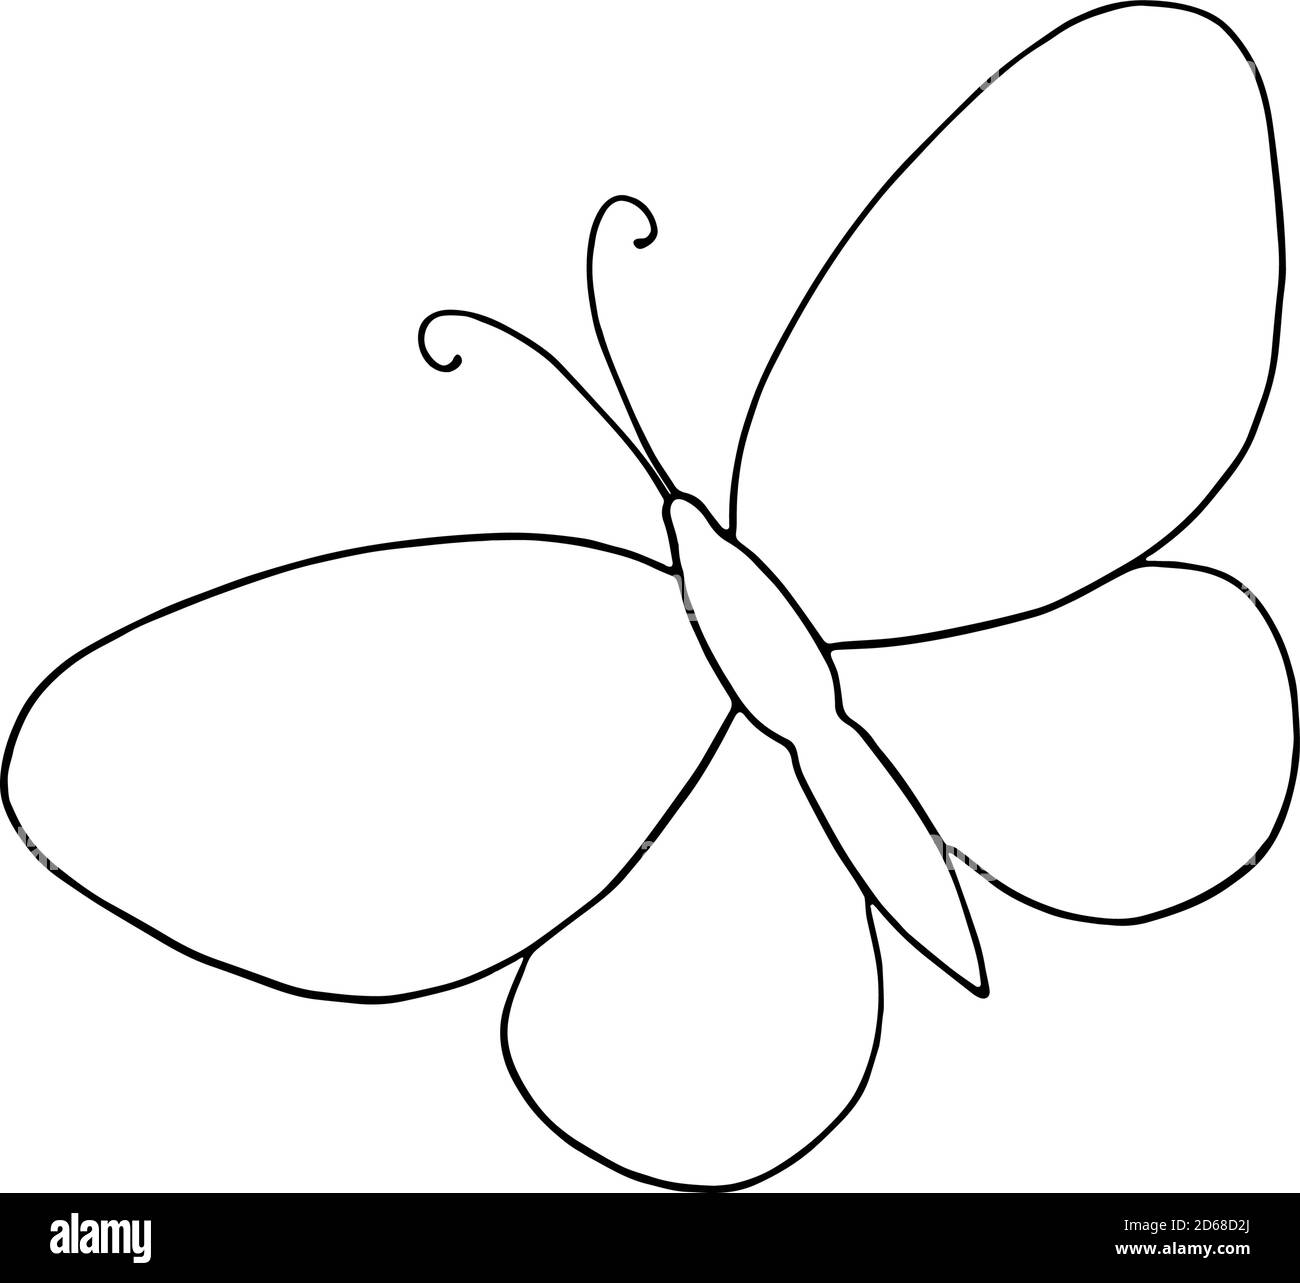 Un papillon tracé à la main illustration vectorielle simple, dessin de contour en style doodle, symbole de l'été et de la nature Illustration de Vecteur